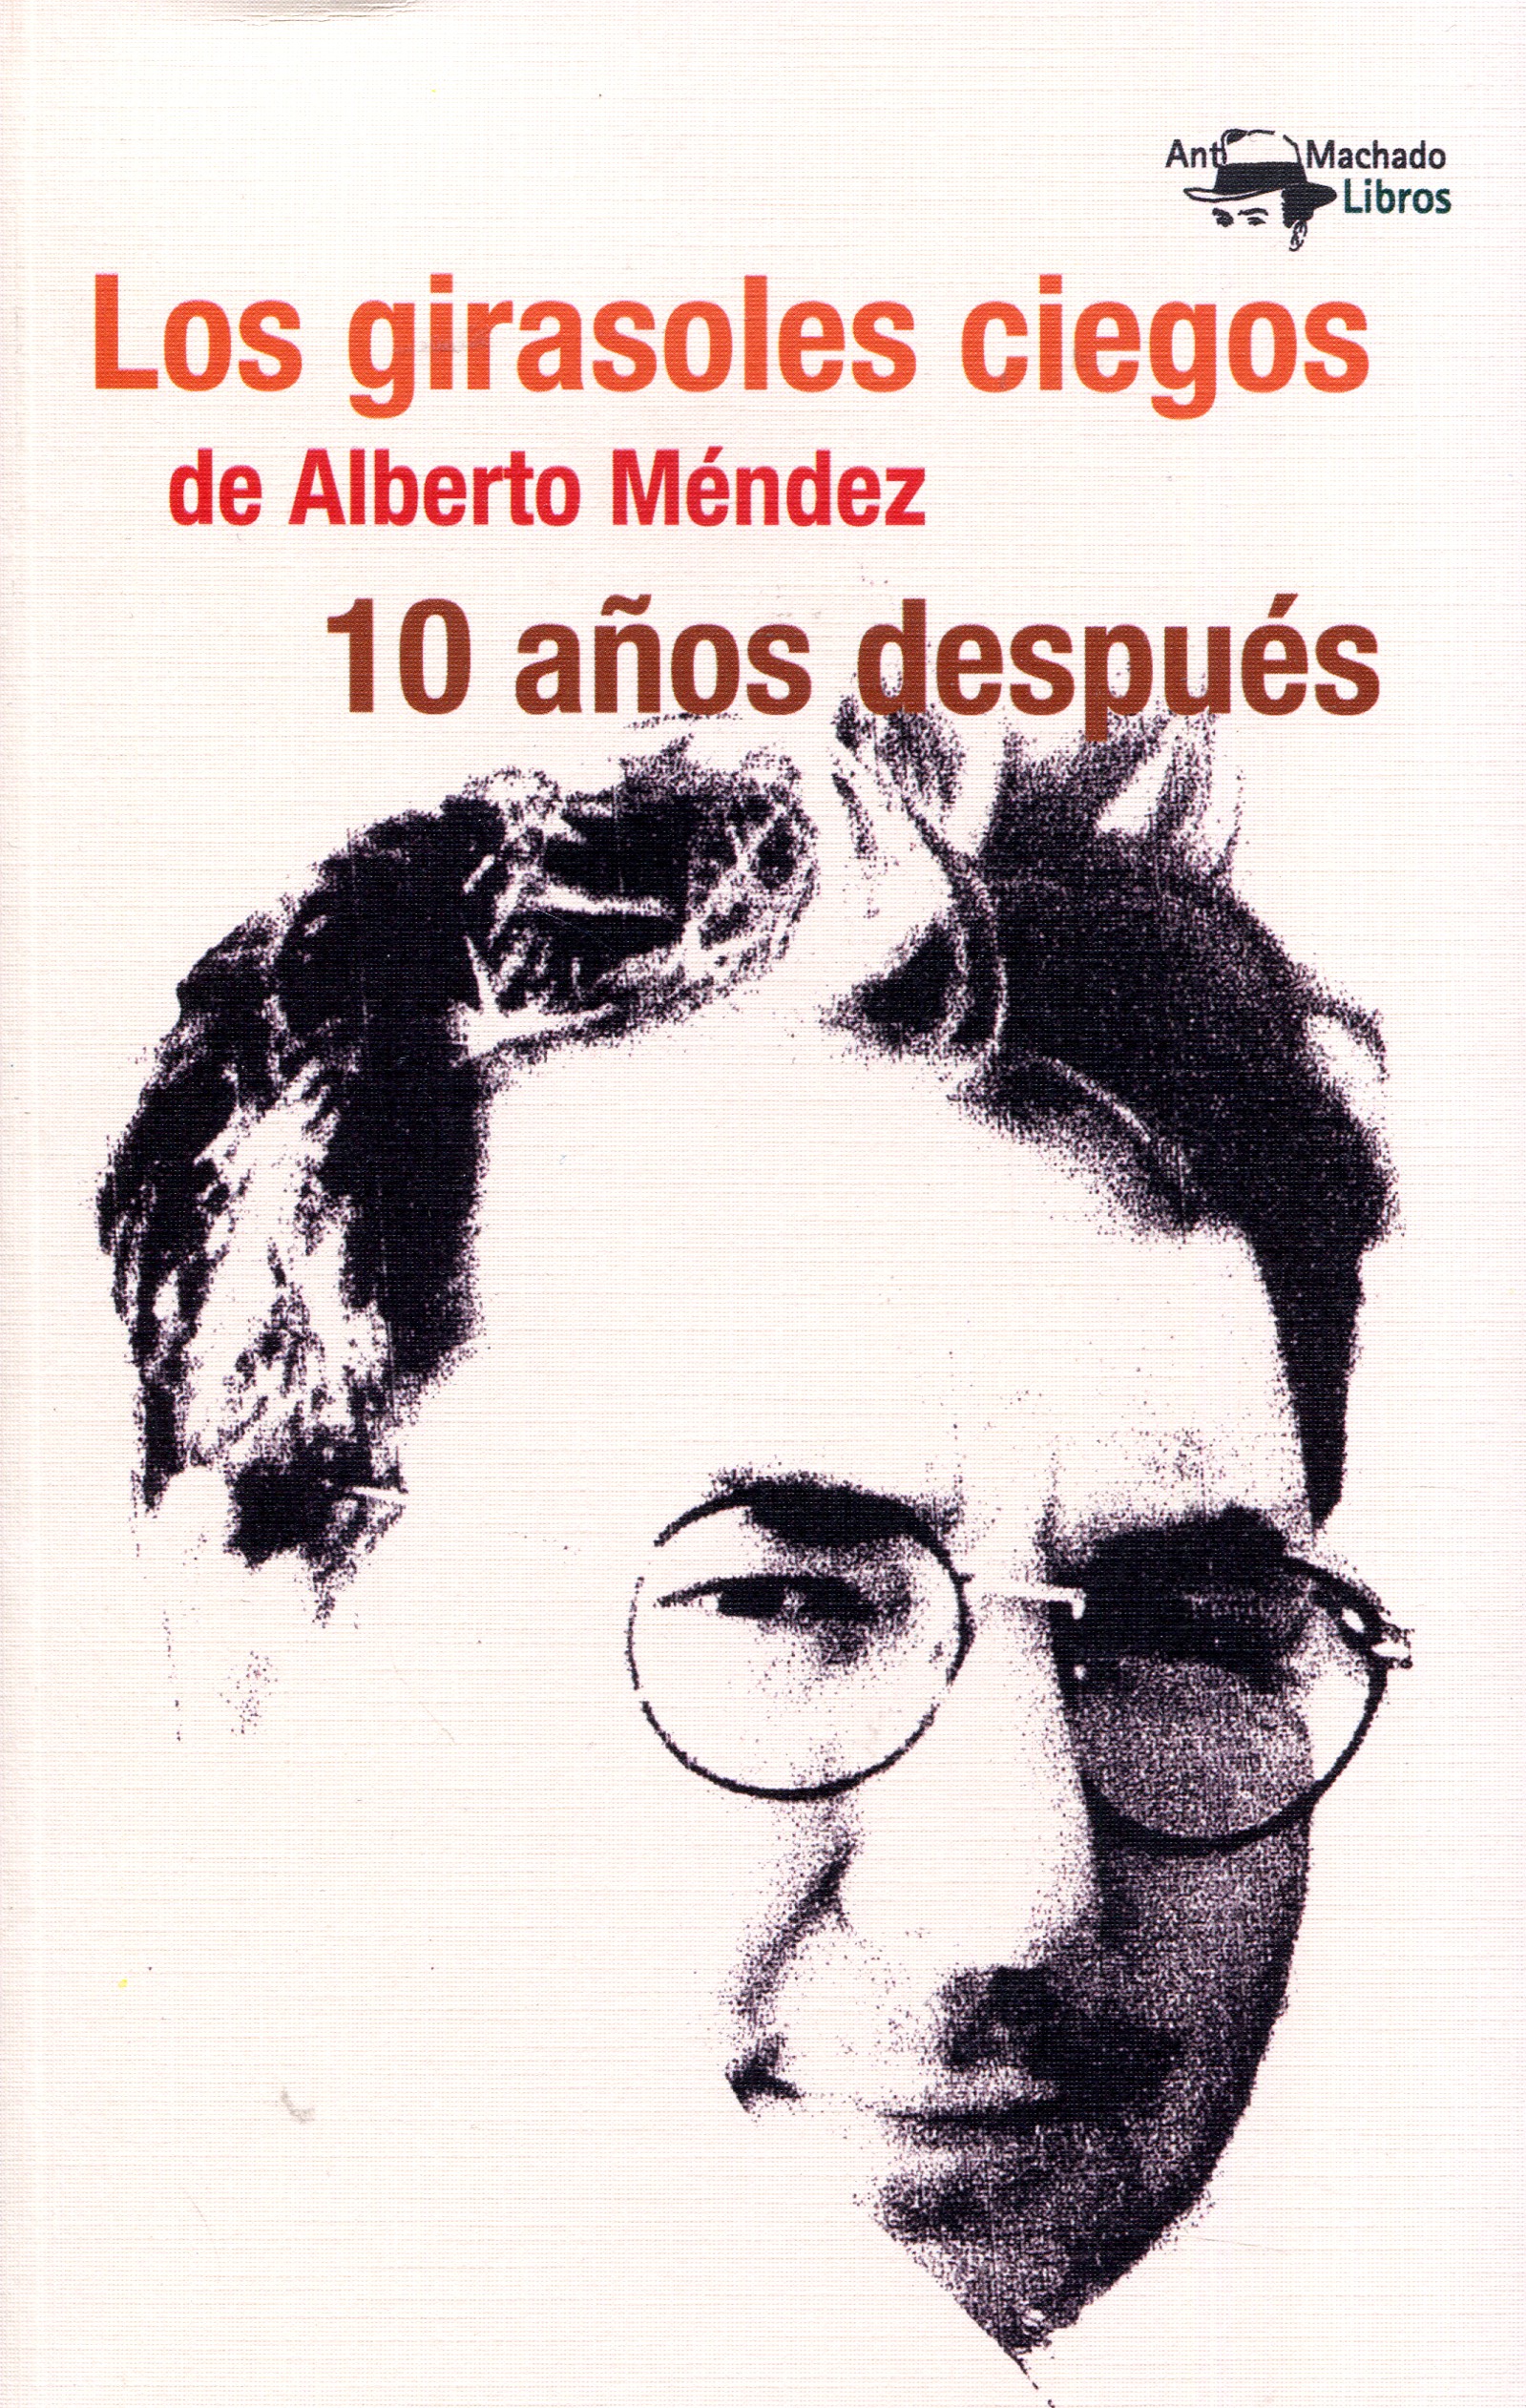 Los girasoles ciegos de Alberto Méndez, diez años después